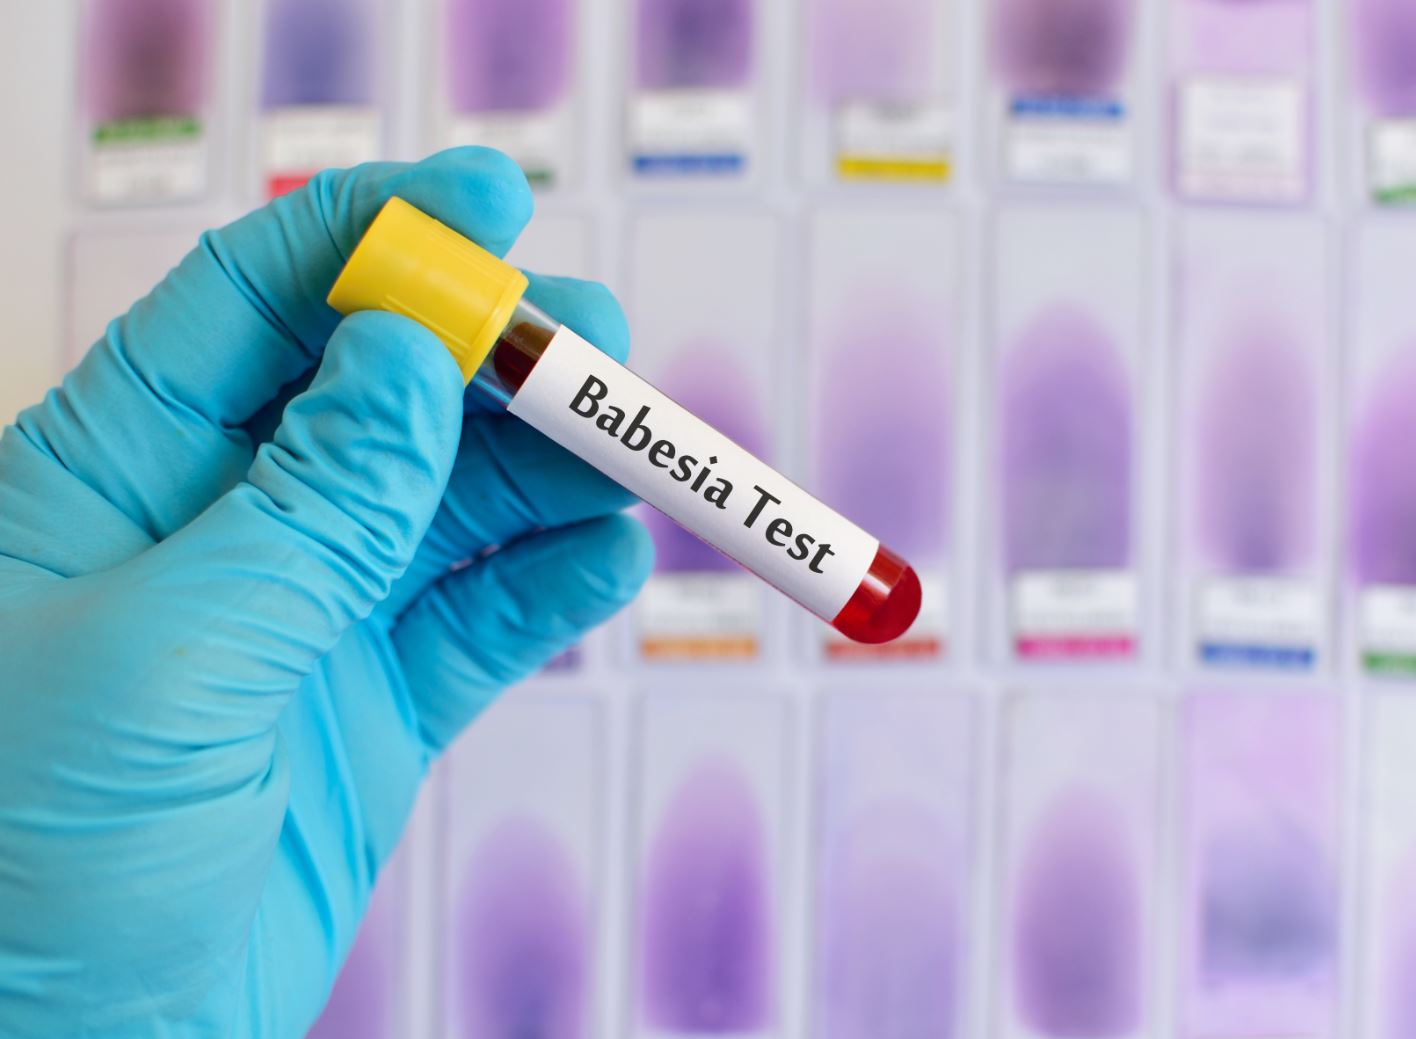 Babesia Test